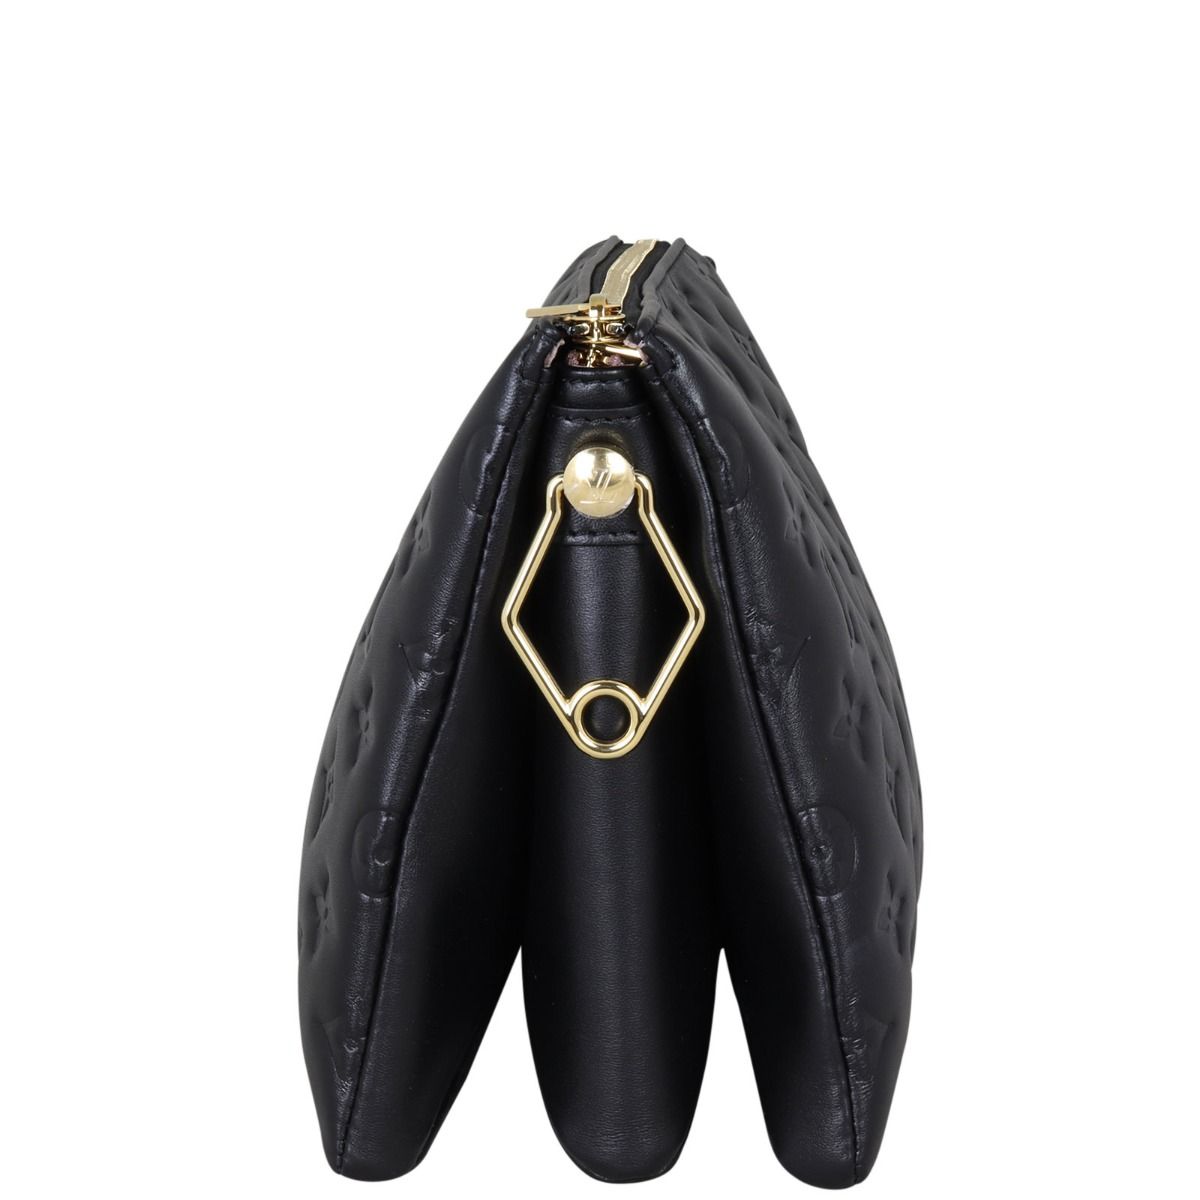 Authentic Louis Vuitton Monogram Black COUSSIN PM Handbag For Women